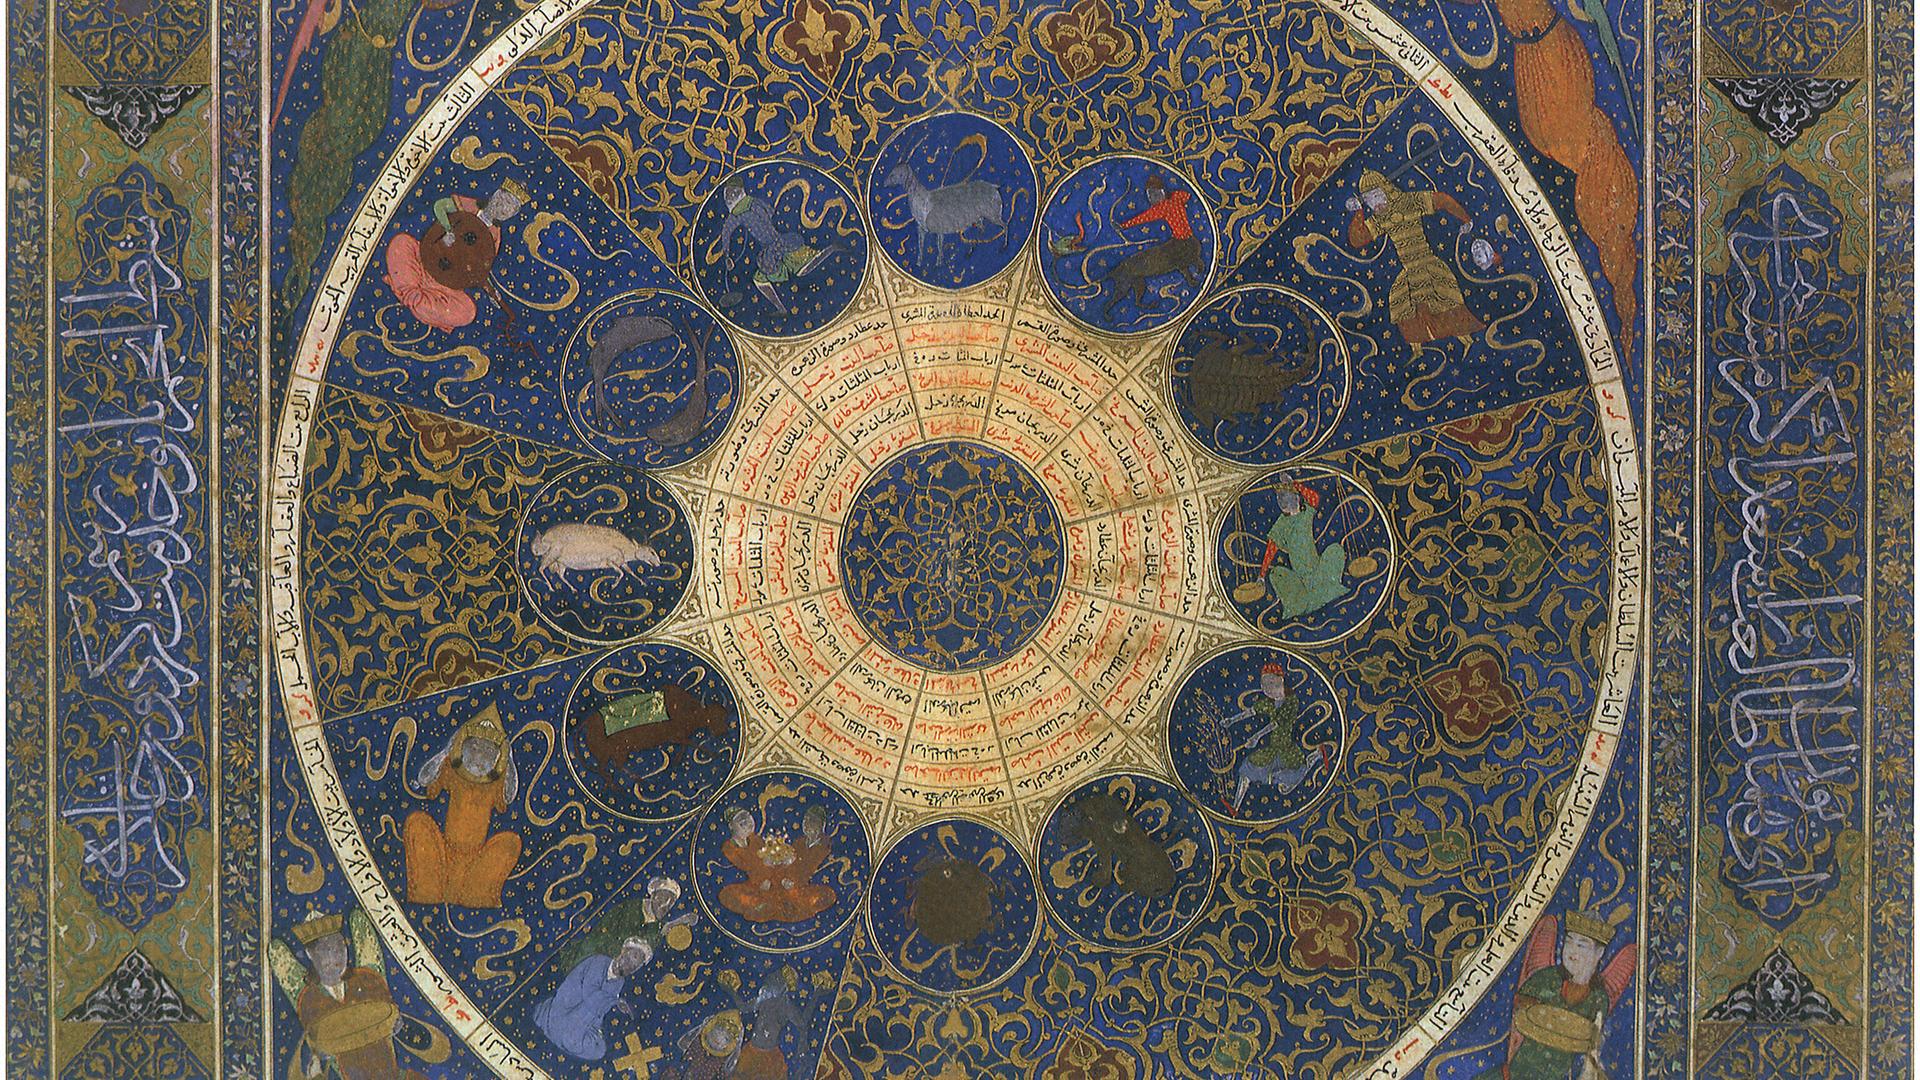 Abbildung eines Horoskops mit Tierzeichen, Planeten und sogenannten Häusern